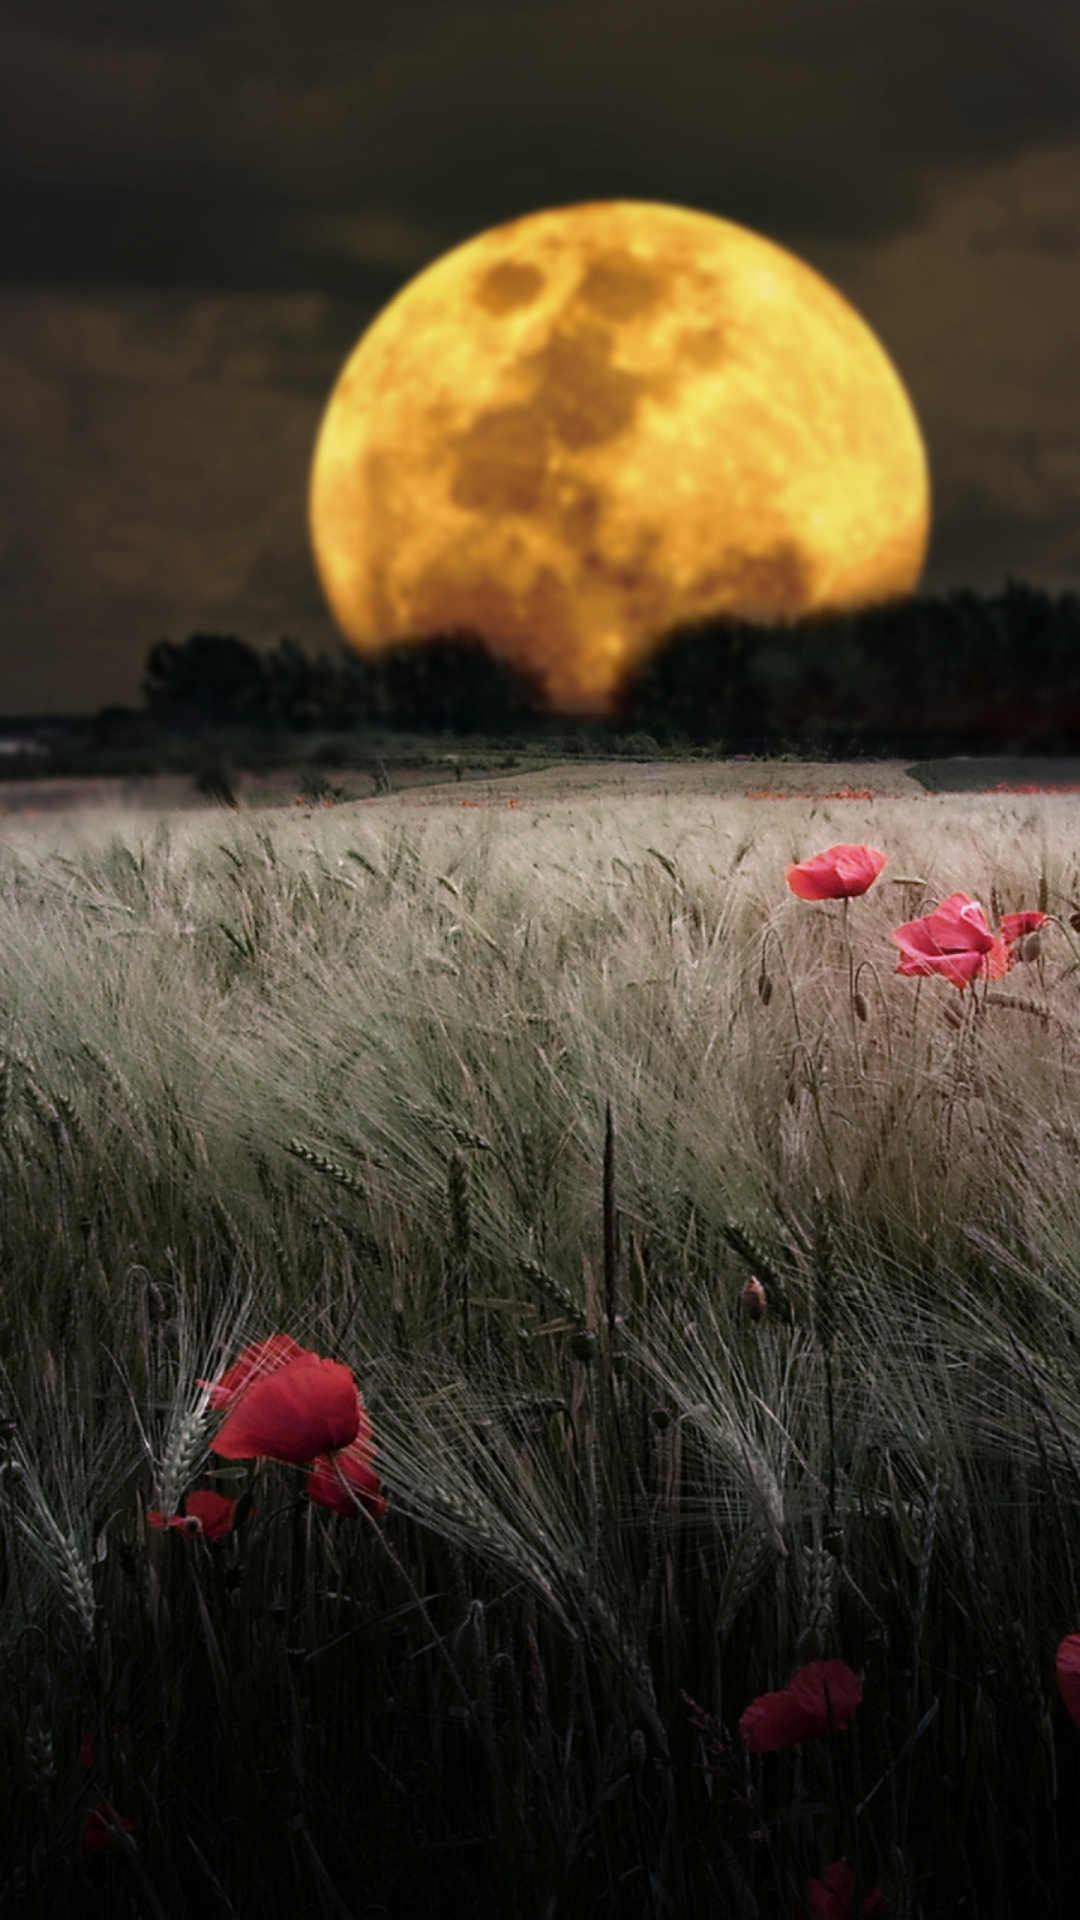 Night Poppies Field wallpaper 1080x1920